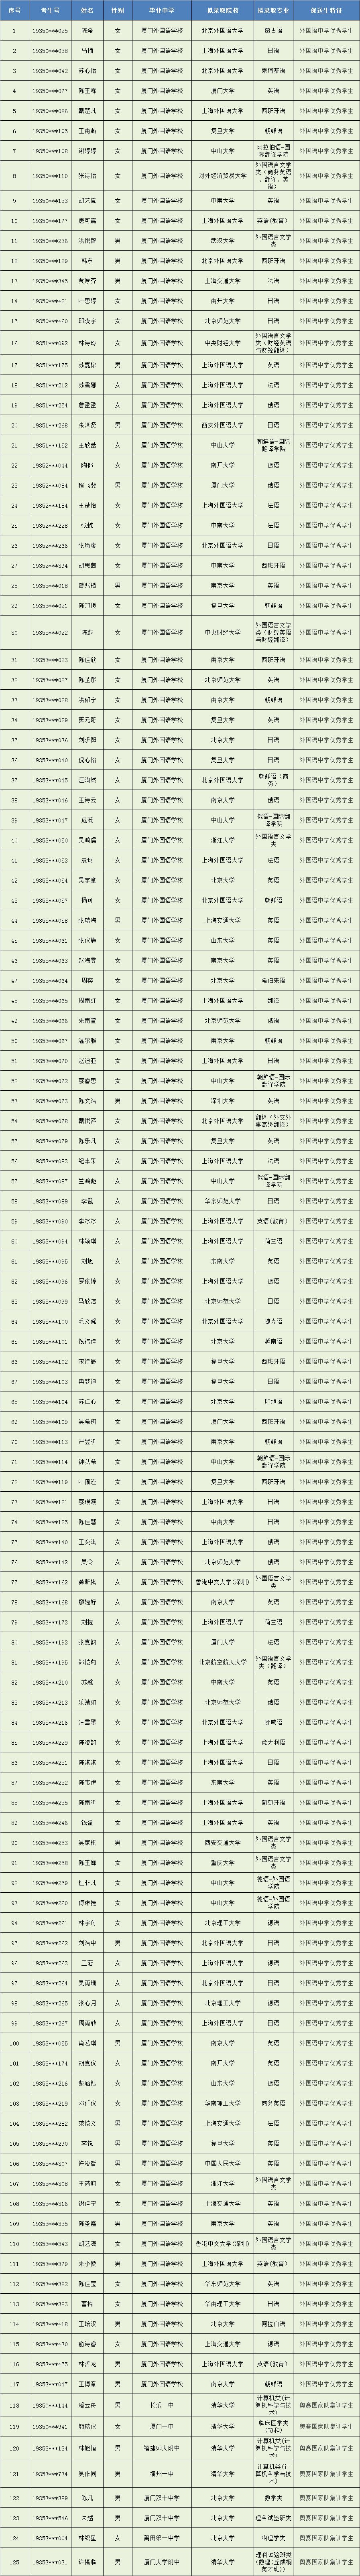 2019年福建高考保送生名单公布 提前被清北等名校录取